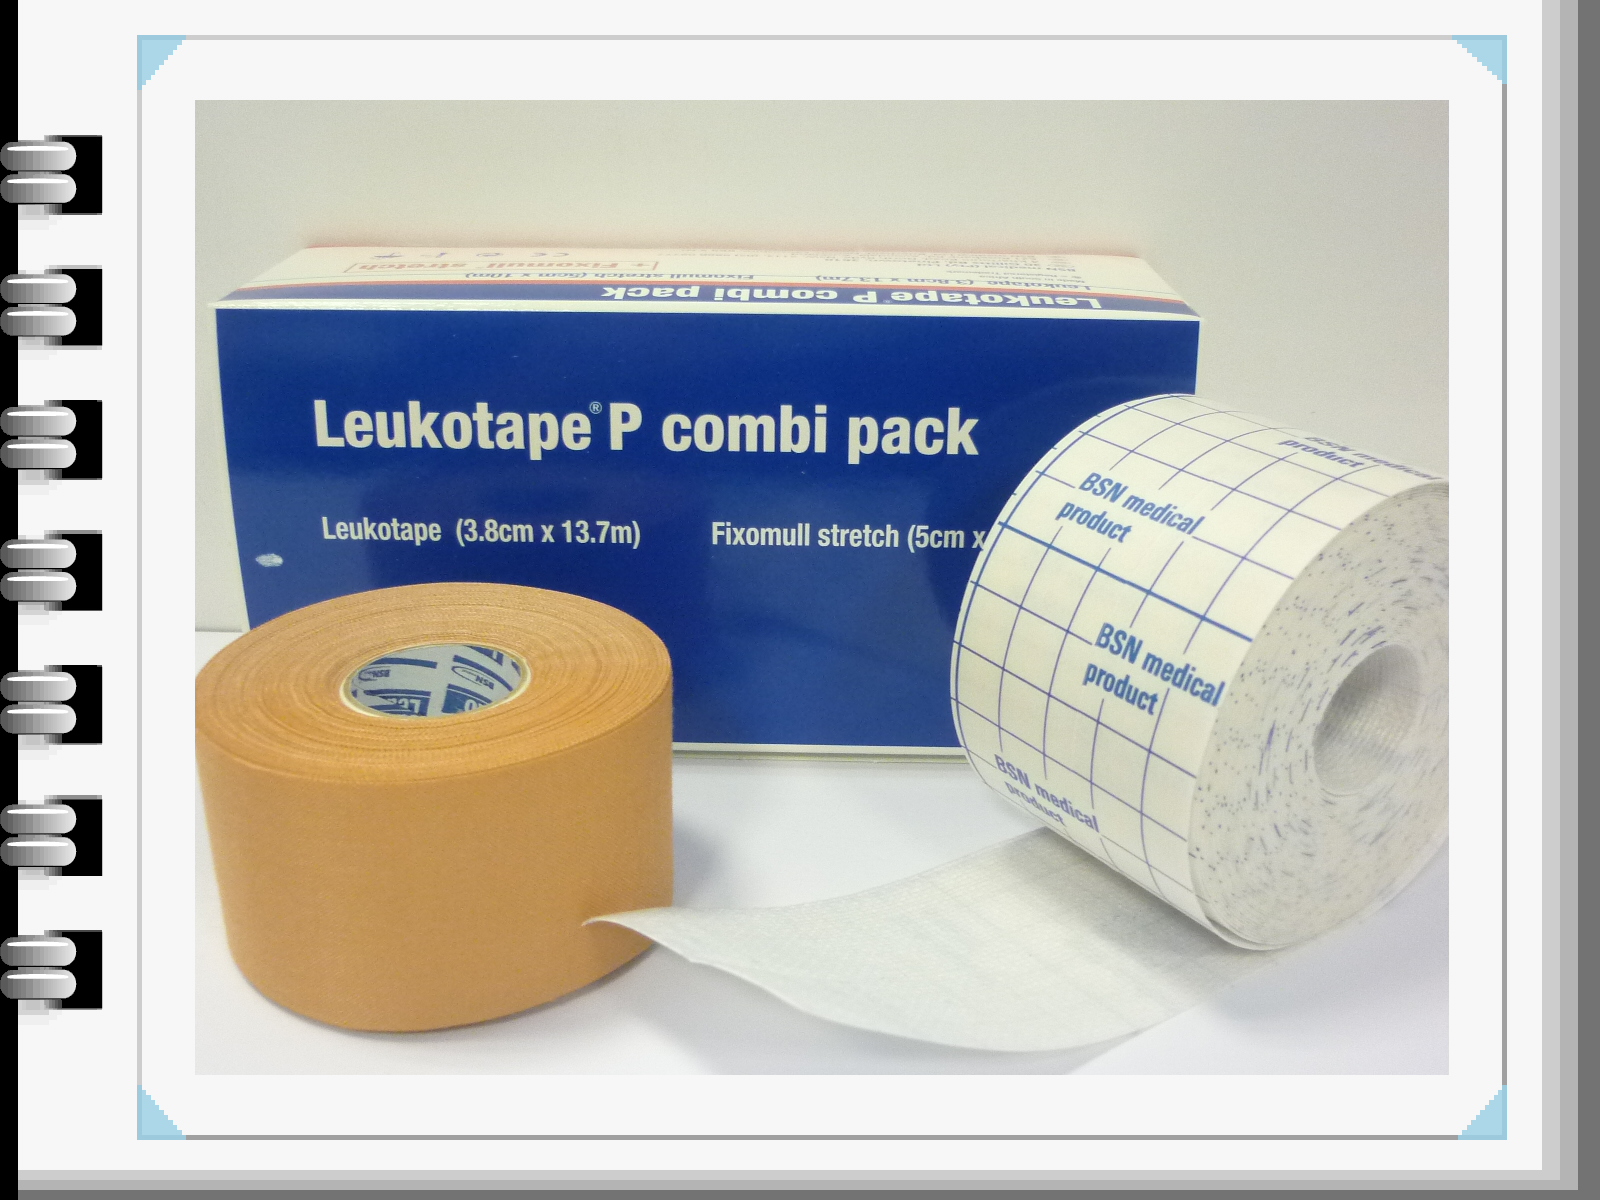 BSN medical - Leukotape P Combi Pack